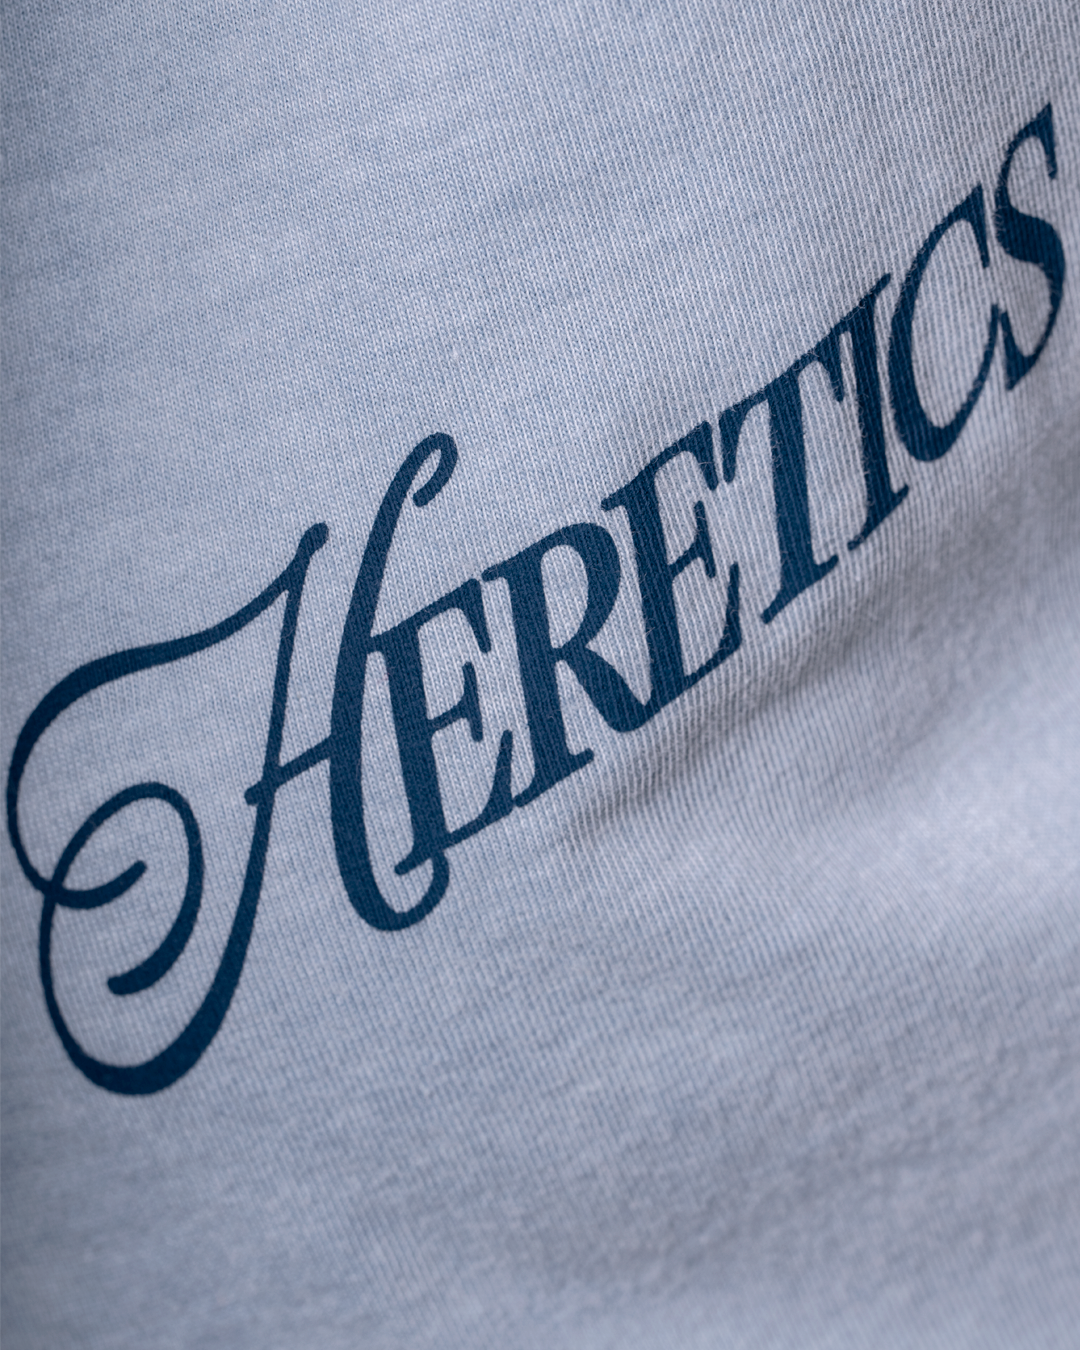 Team Heretics Spring 2023 ライトウェイト ライトブルーTシャツ